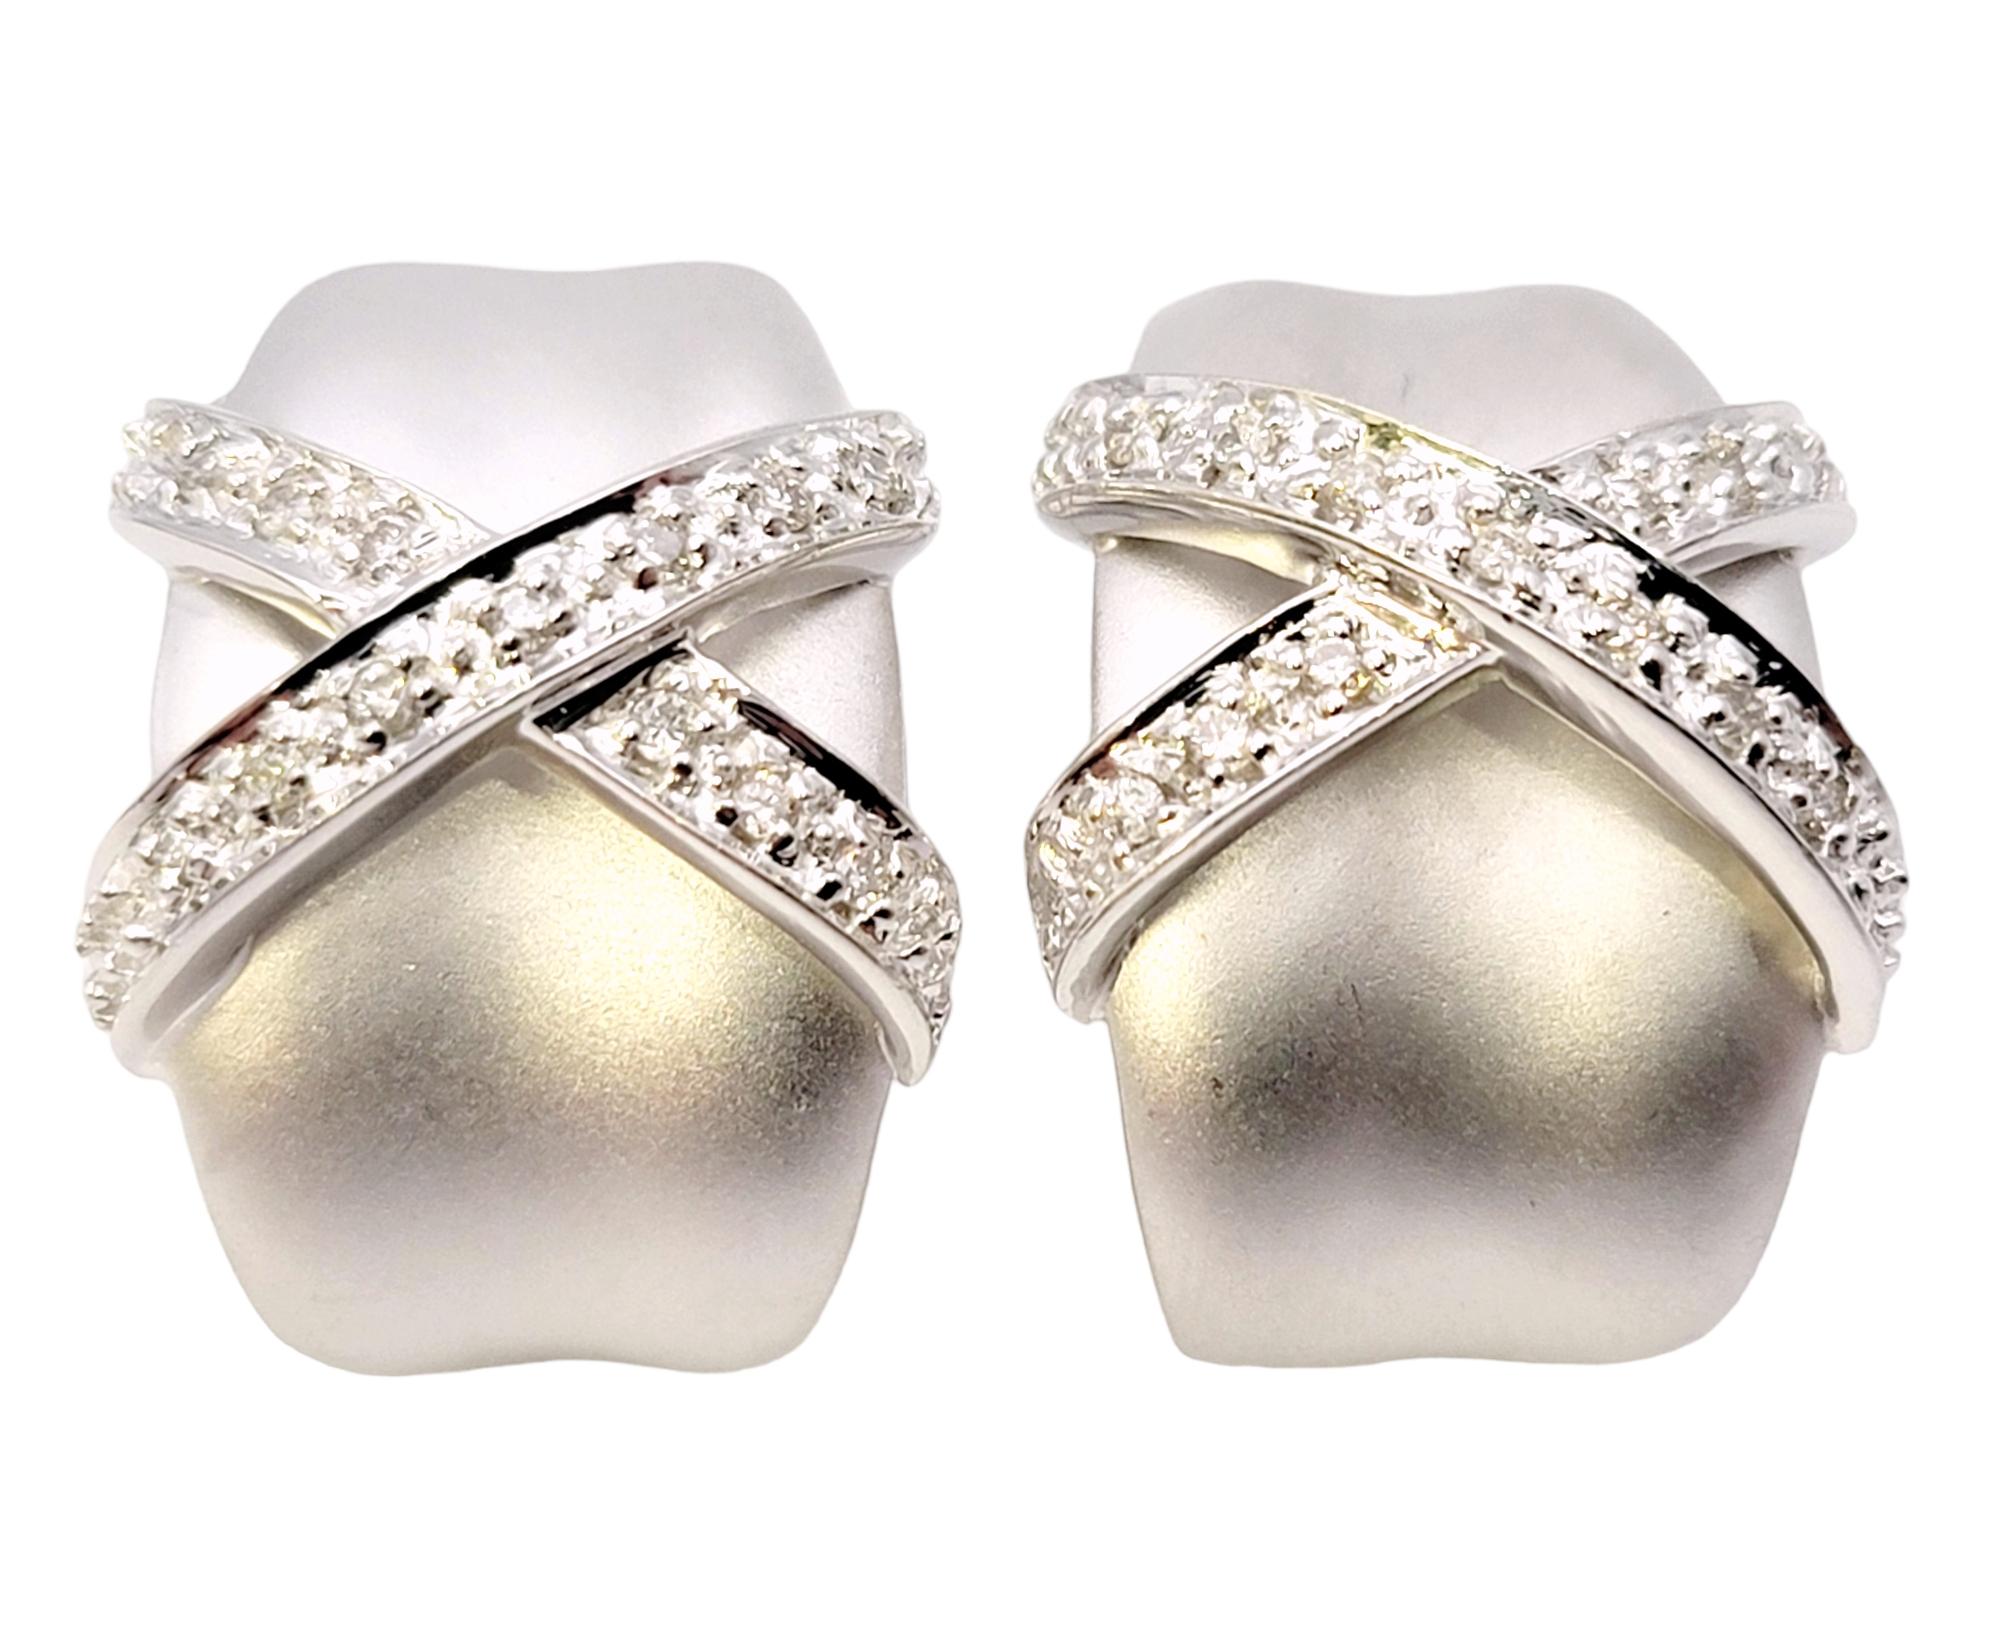 Elegante und moderne halbe Ohrringe mit schillernden Diamantenverzierungen. Das hübsche Paar schmiegt sich sanft an das Ohrläppchen an und sorgt für einen schicken, raffinierten Look, den Sie absolut lieben werden. 

Diese wunderschönen Ohrringe